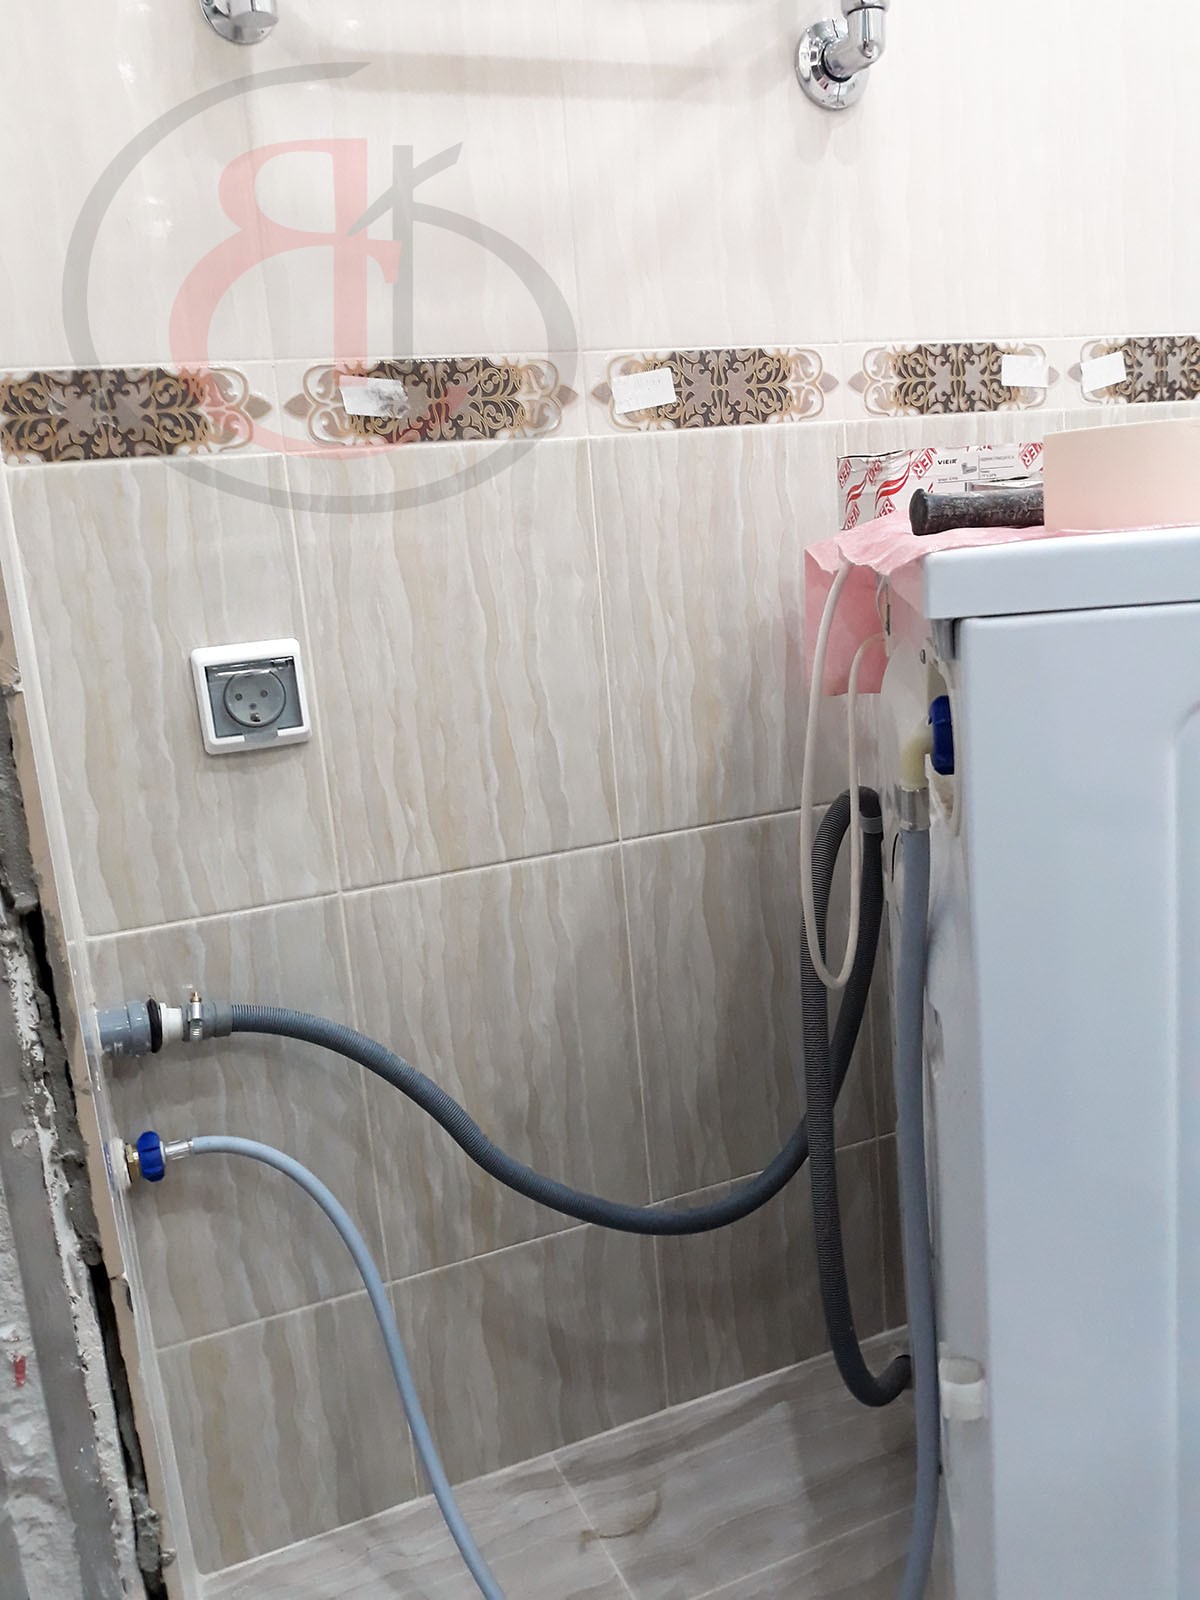 Достоинства качества в отделке ванной и туалета по ул. Беловежская, В ПРОЦЕССЕ РЕМОНТА (17)